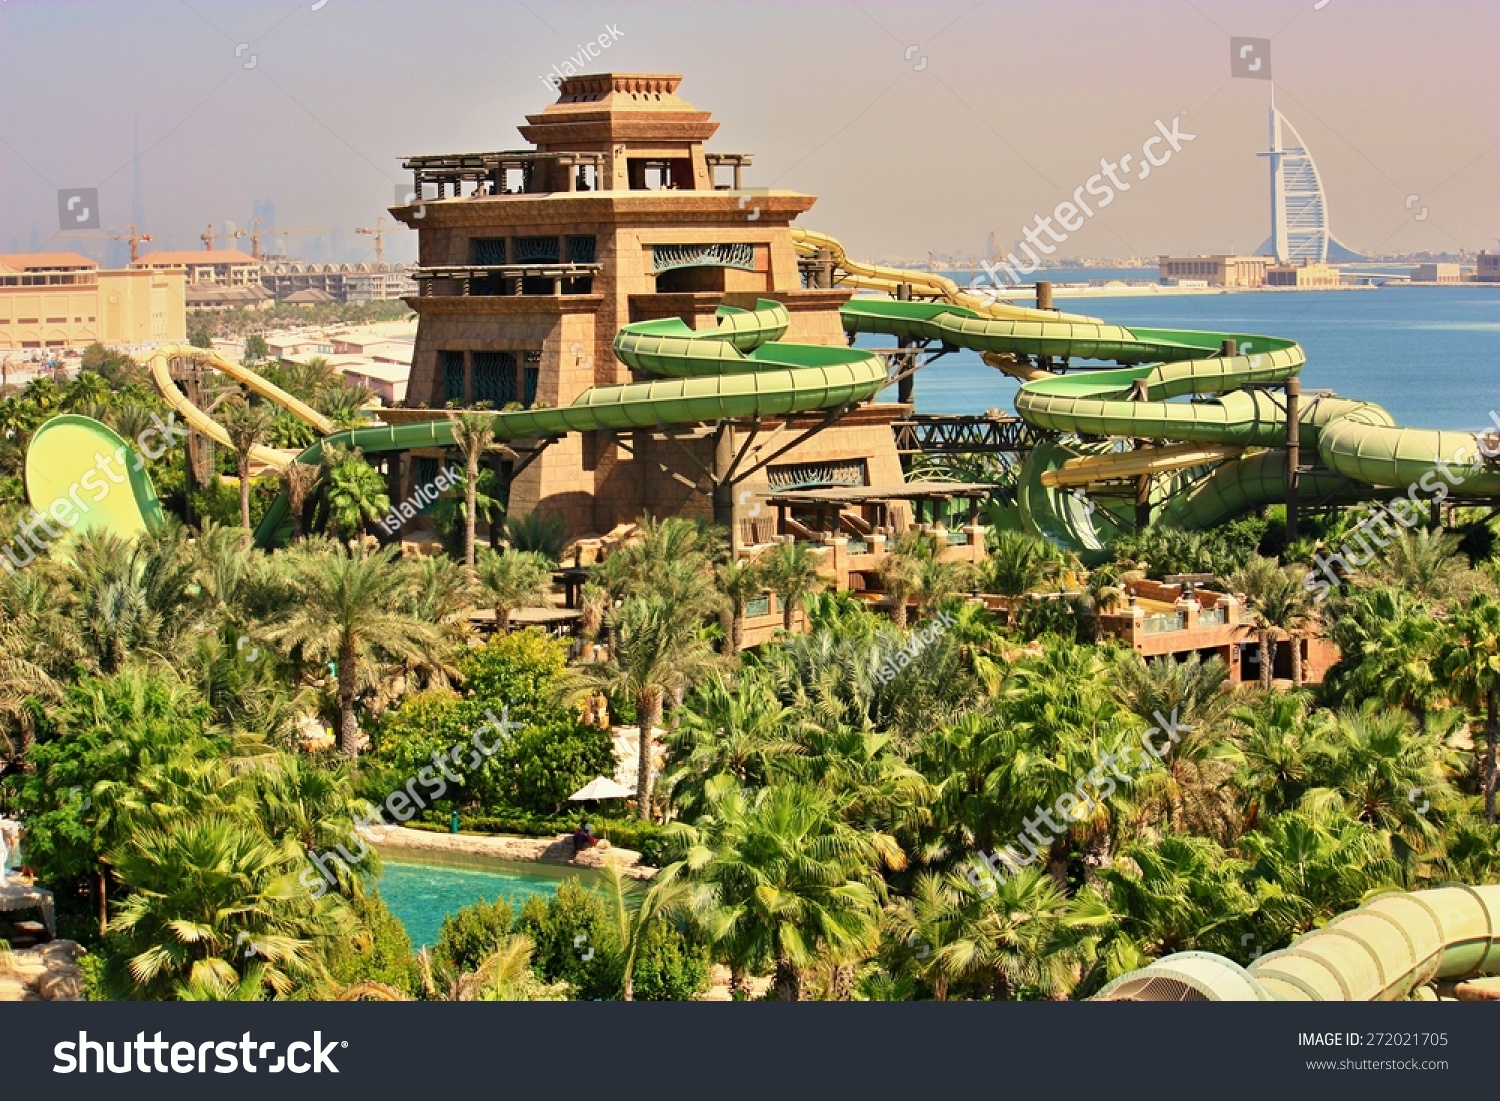 Dubai, Uae - October 21: The Aquaventure Waterpark Of ...